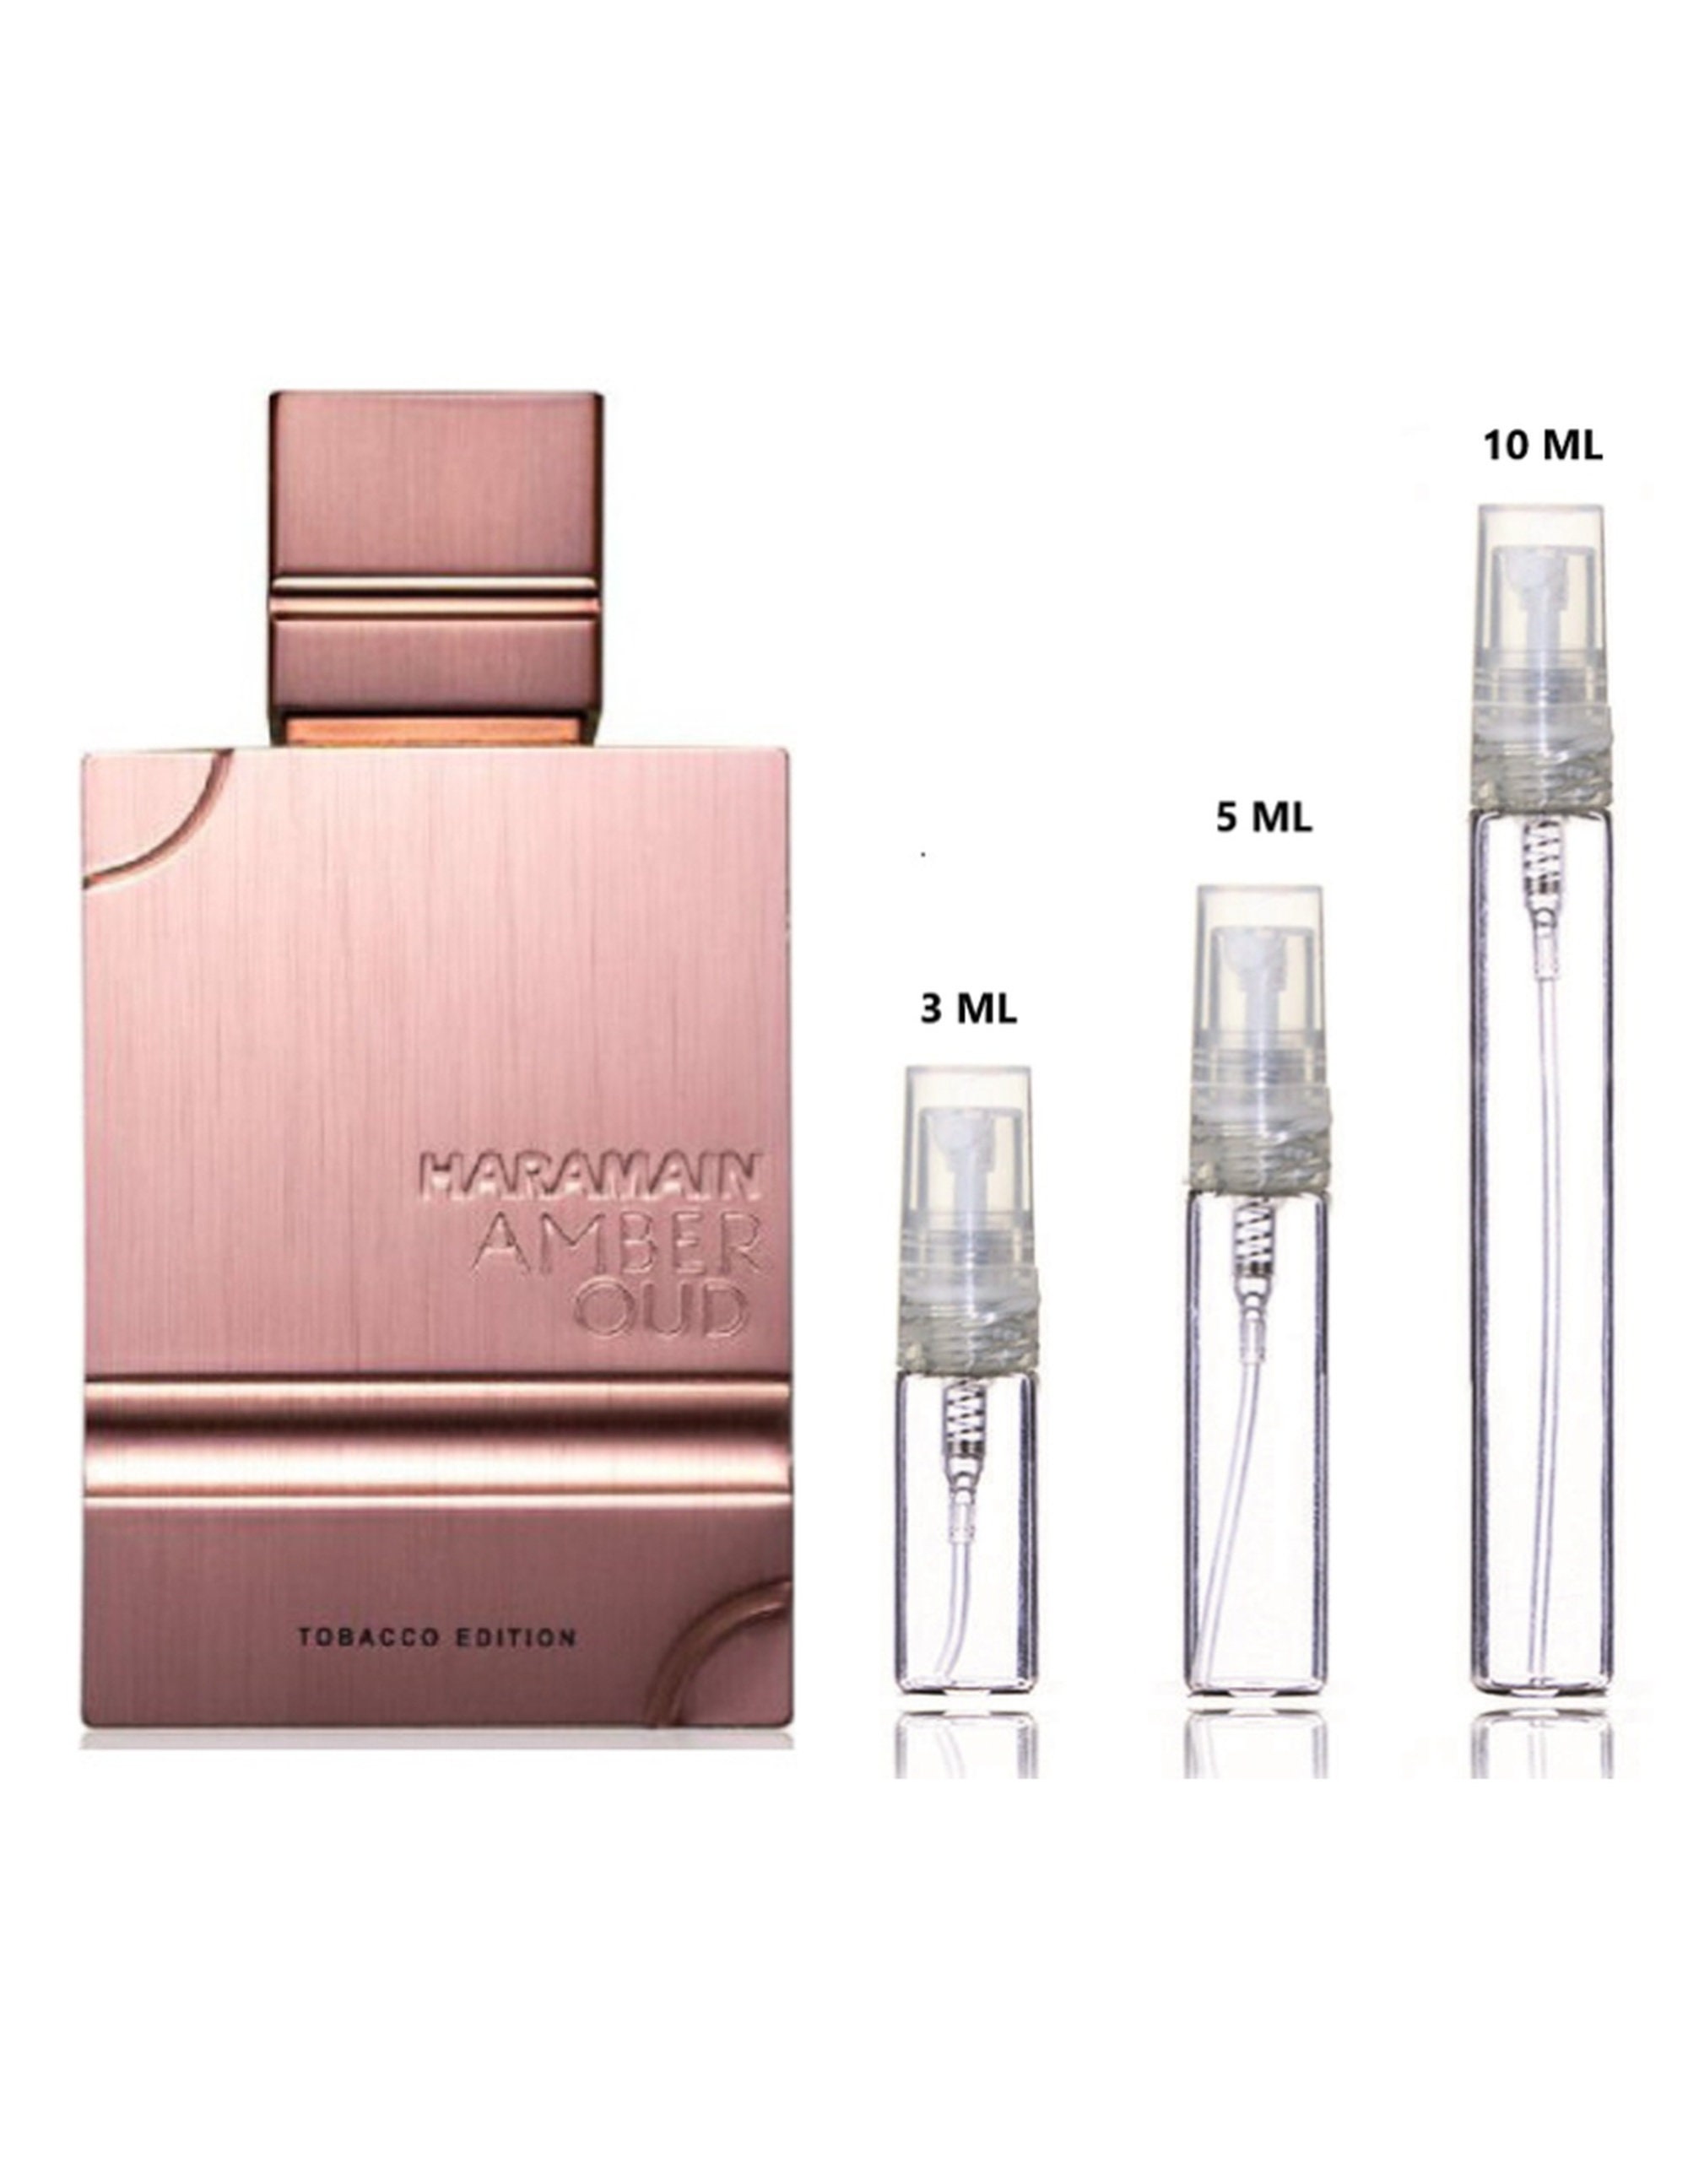 Al Haramain Amber Oud Tobacco Edition Eau De Parfum 3ml 5ml 